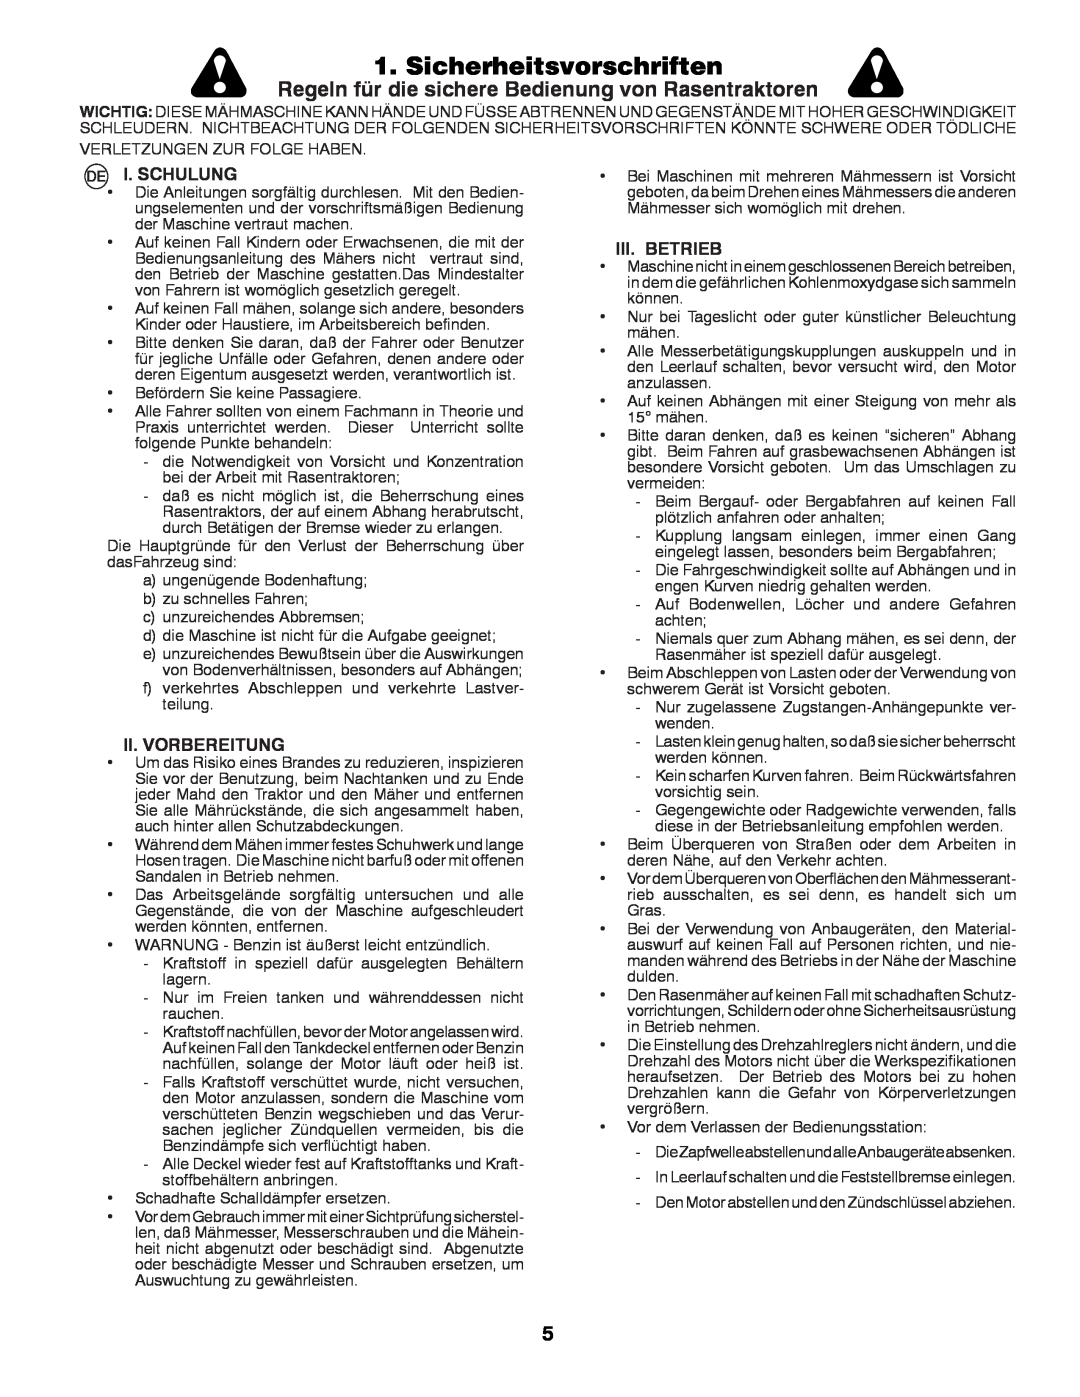 Partner Tech P12597RB Sicherheitsvorschriften, Regeln für die sichere Bedienung von Rasentraktoren, I. Schulung 